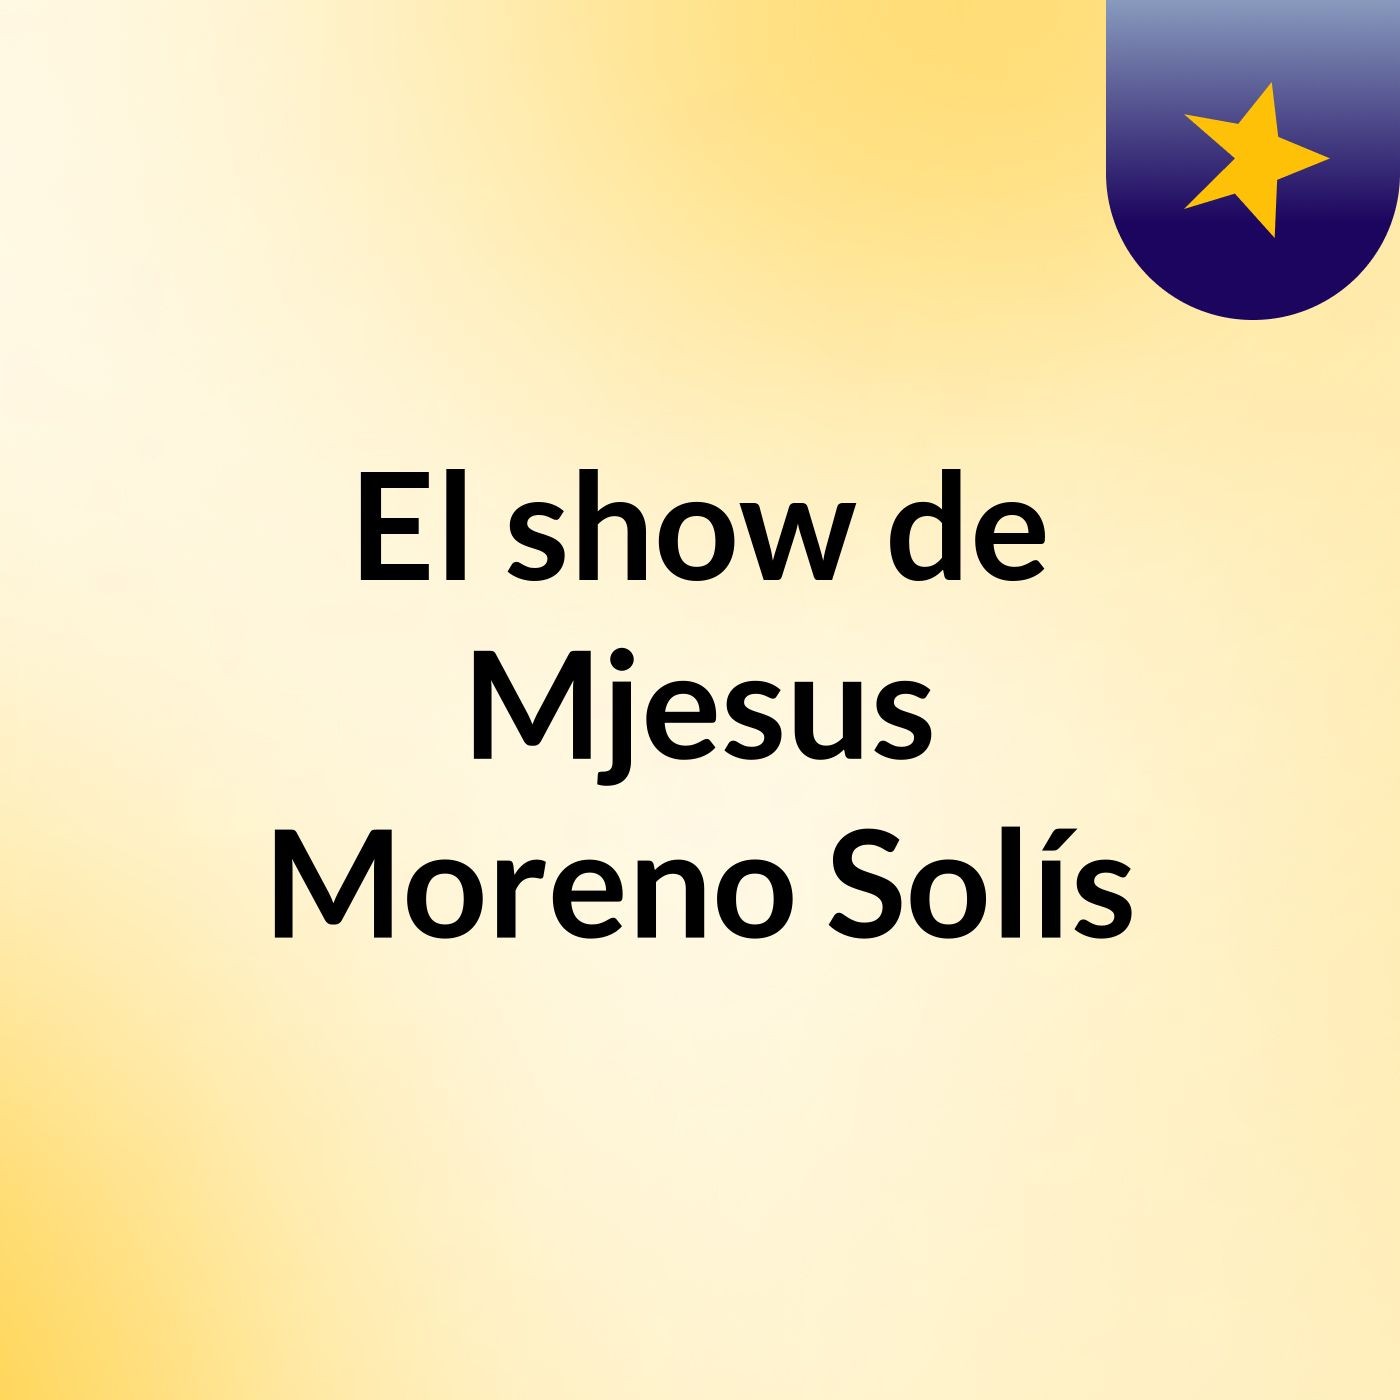 El show de Mjesus Moreno Solís